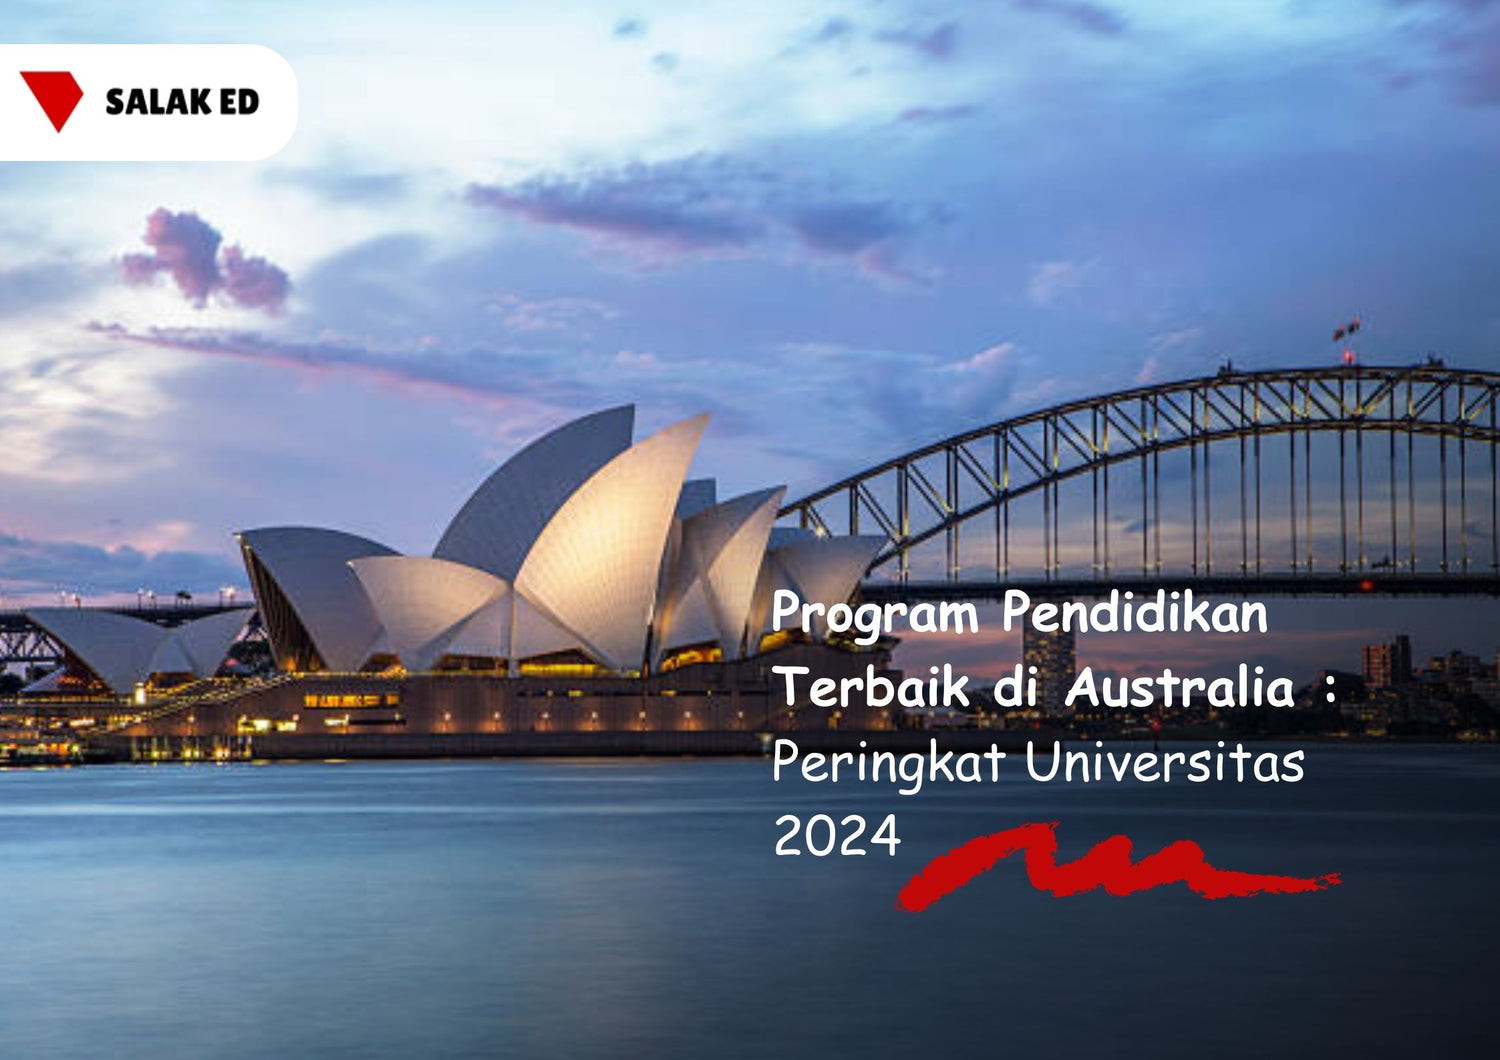 Program Pendidikan Terbaik di Australia: Peringkat Universitas 2024